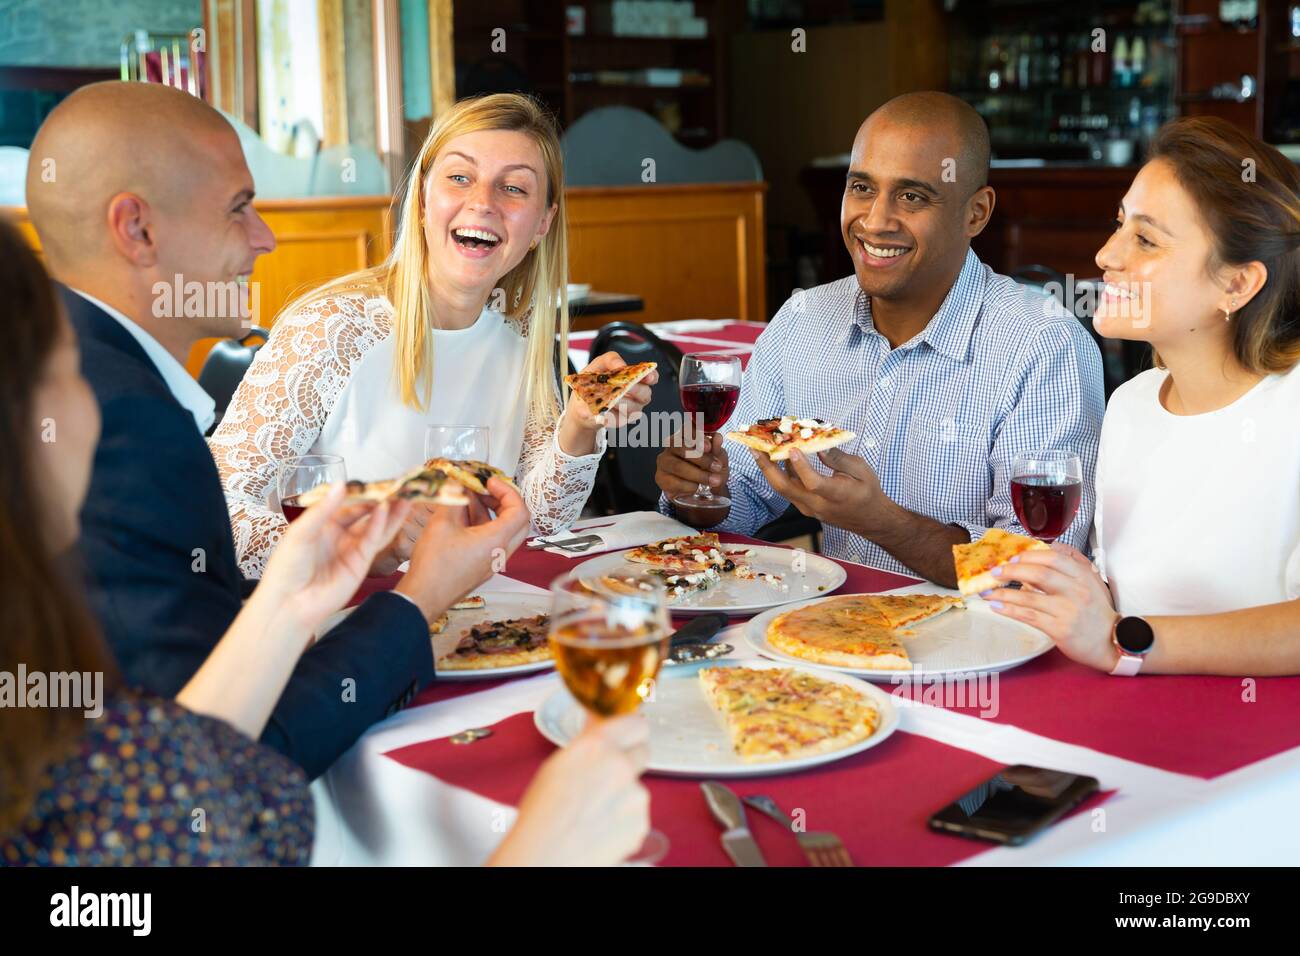 Glückliche Freunde essen leckere Pizza und plaudern miteinander im Restaurant Stockfoto